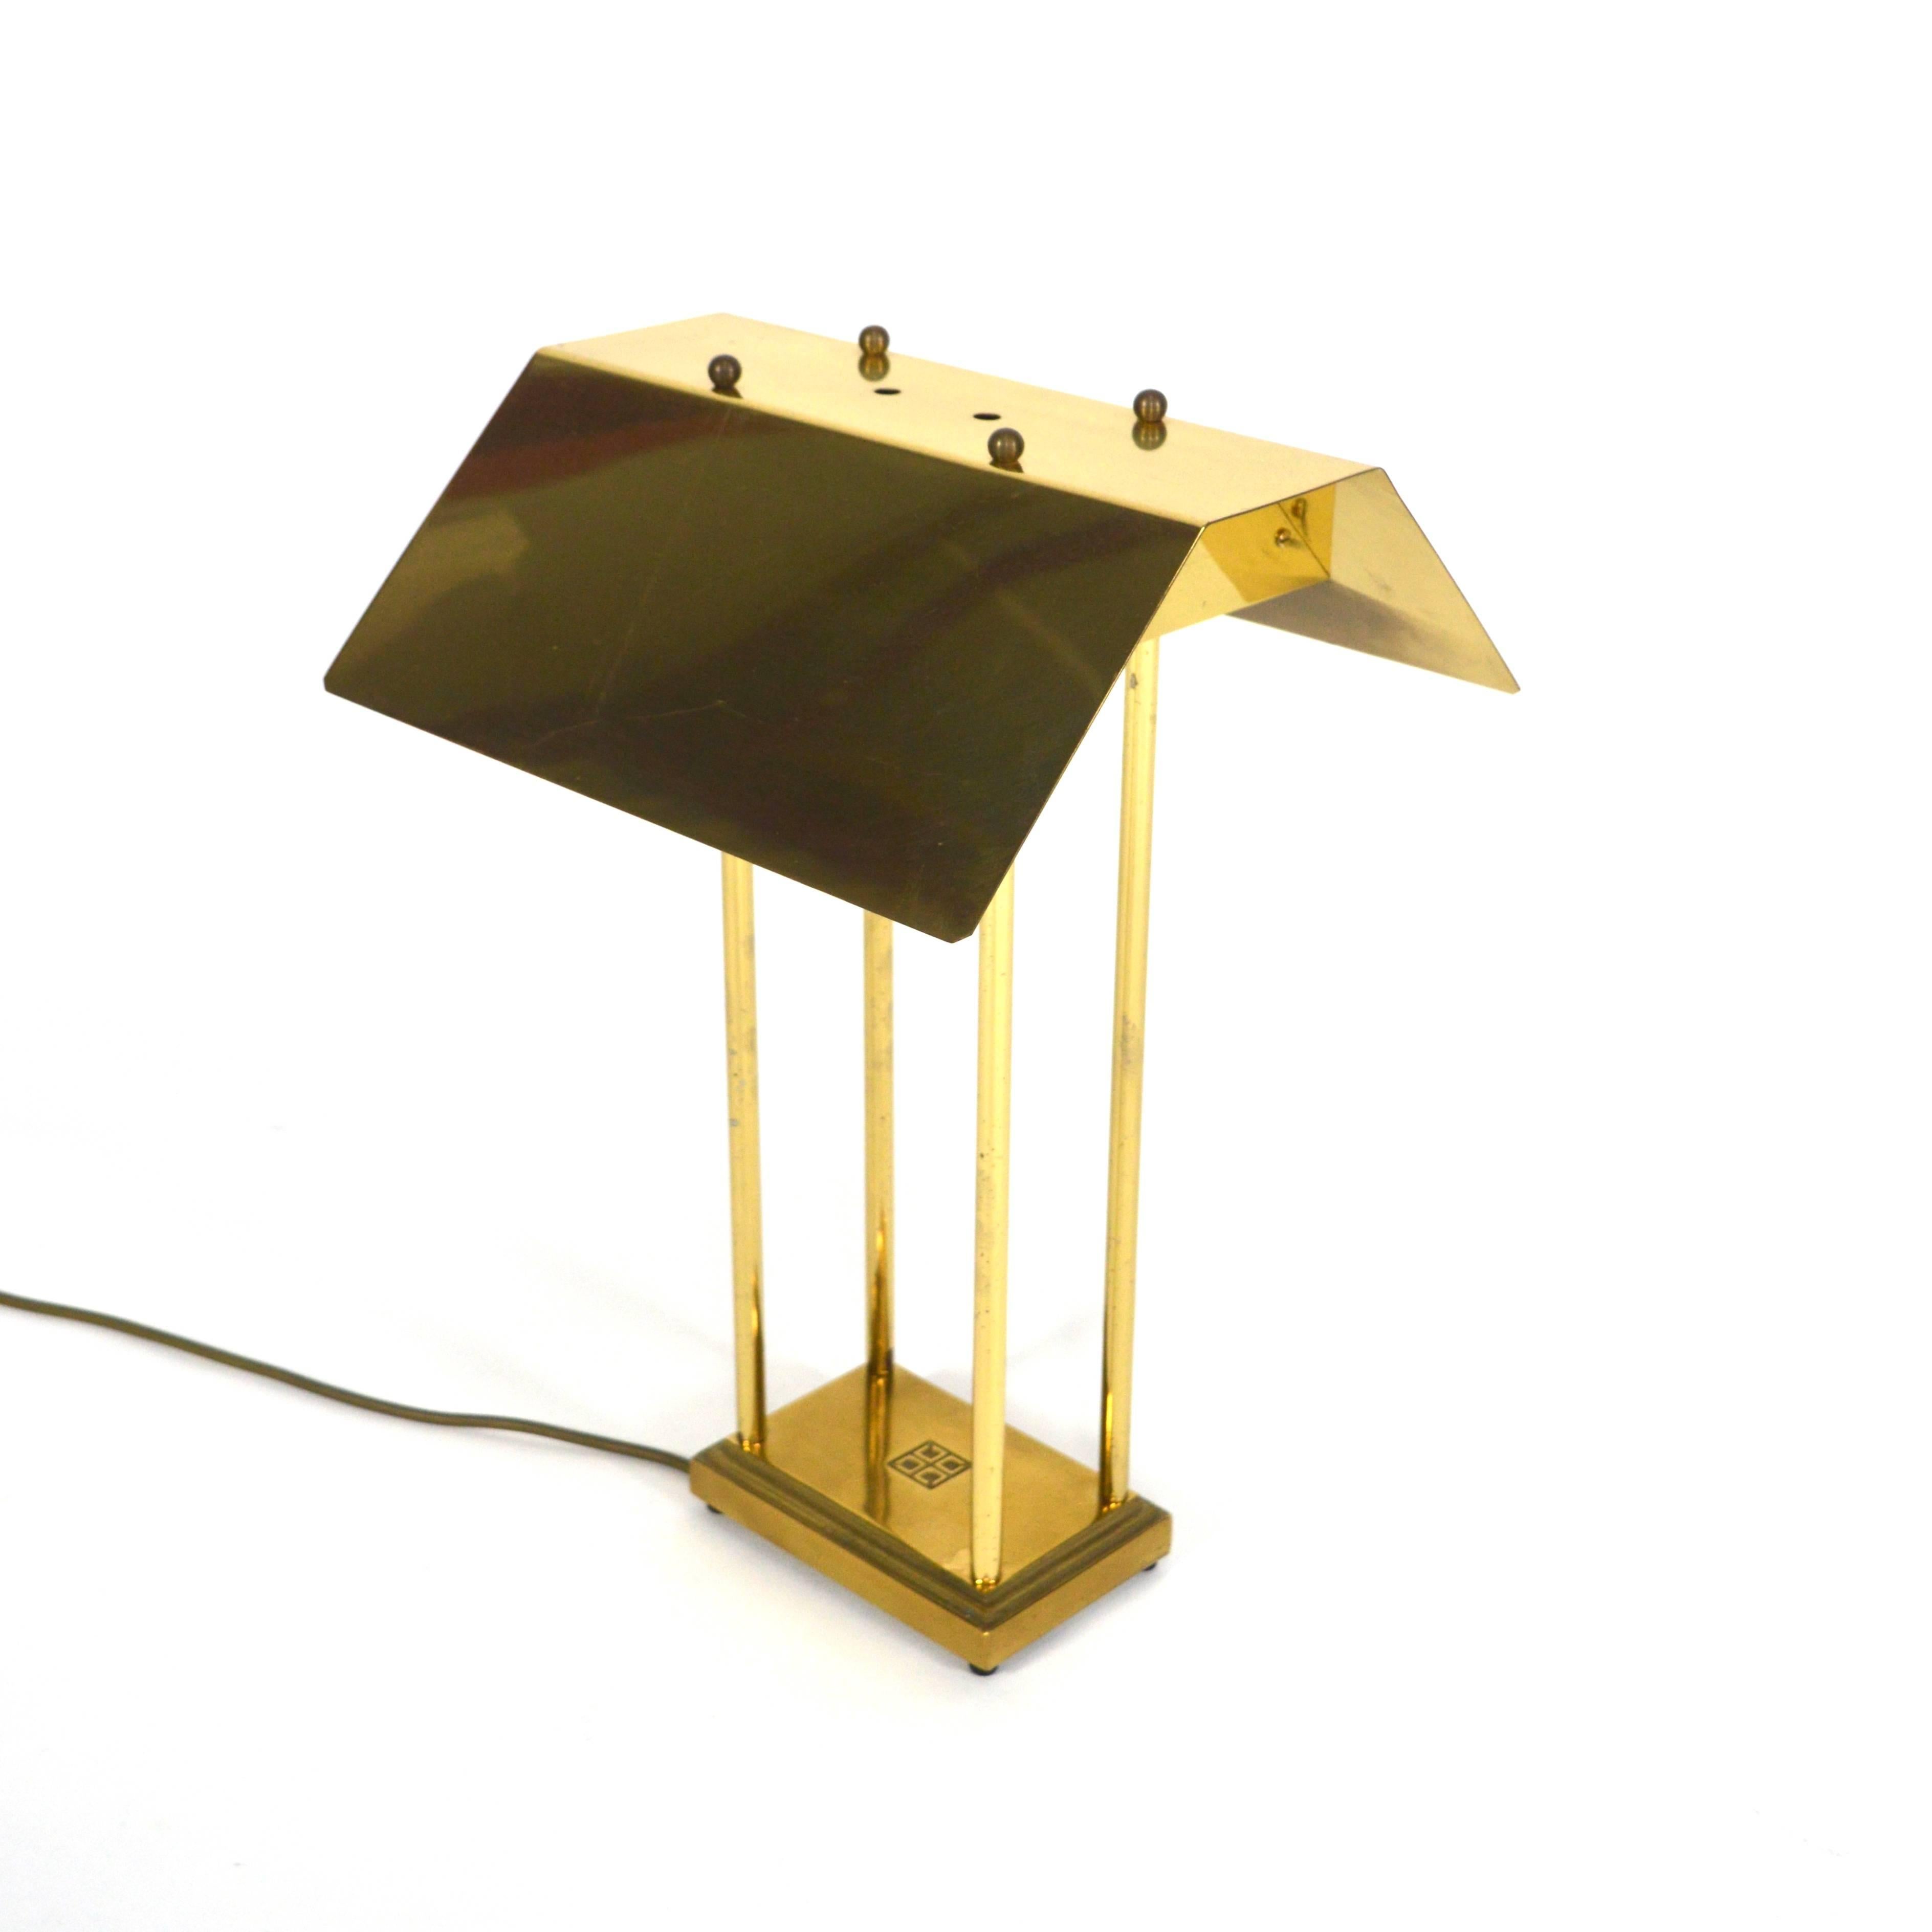 Belle et rare lampe de table de Peter Ghyczy, Pays-Bas, années 1980.
Modèle 'MW' Mega Watt en laiton.
En très bon état. Patiné dans une couleur dorée chaude.
Elle peut être polie pour retrouver son état d'origine. Il aura alors une couleur dorée